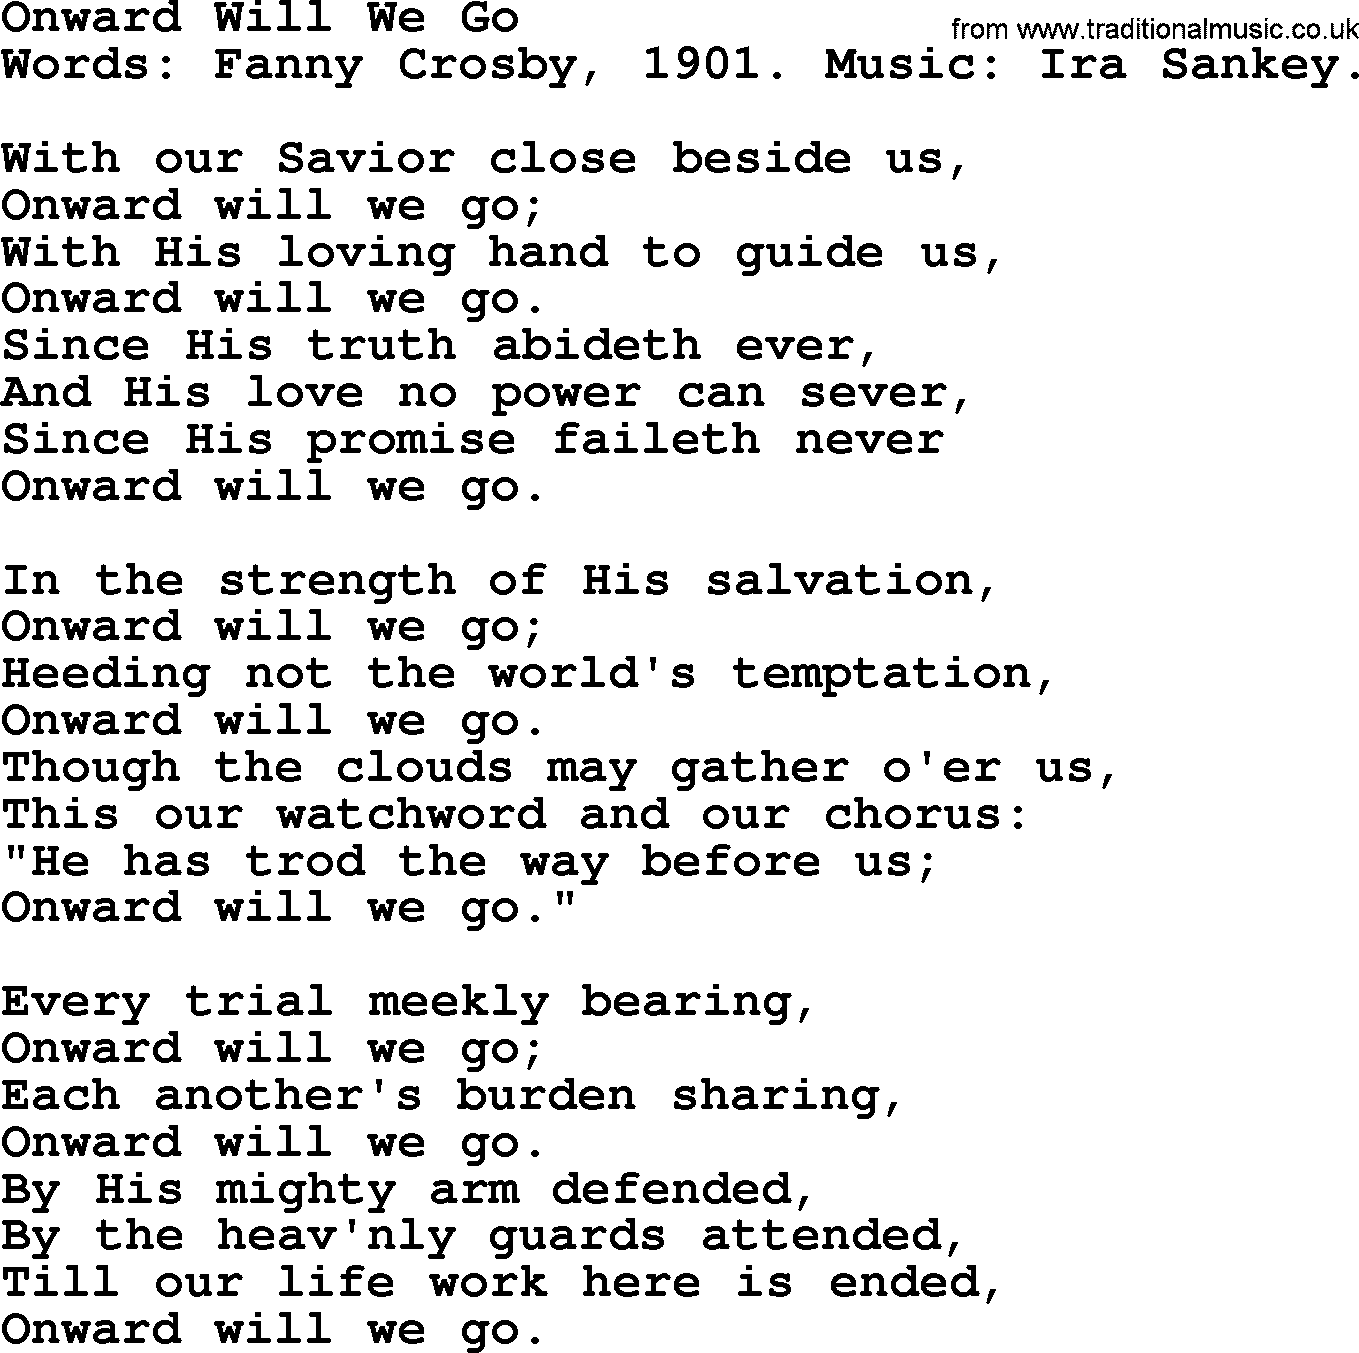 Fanny Crosby song: Onward Will We Go, lyrics